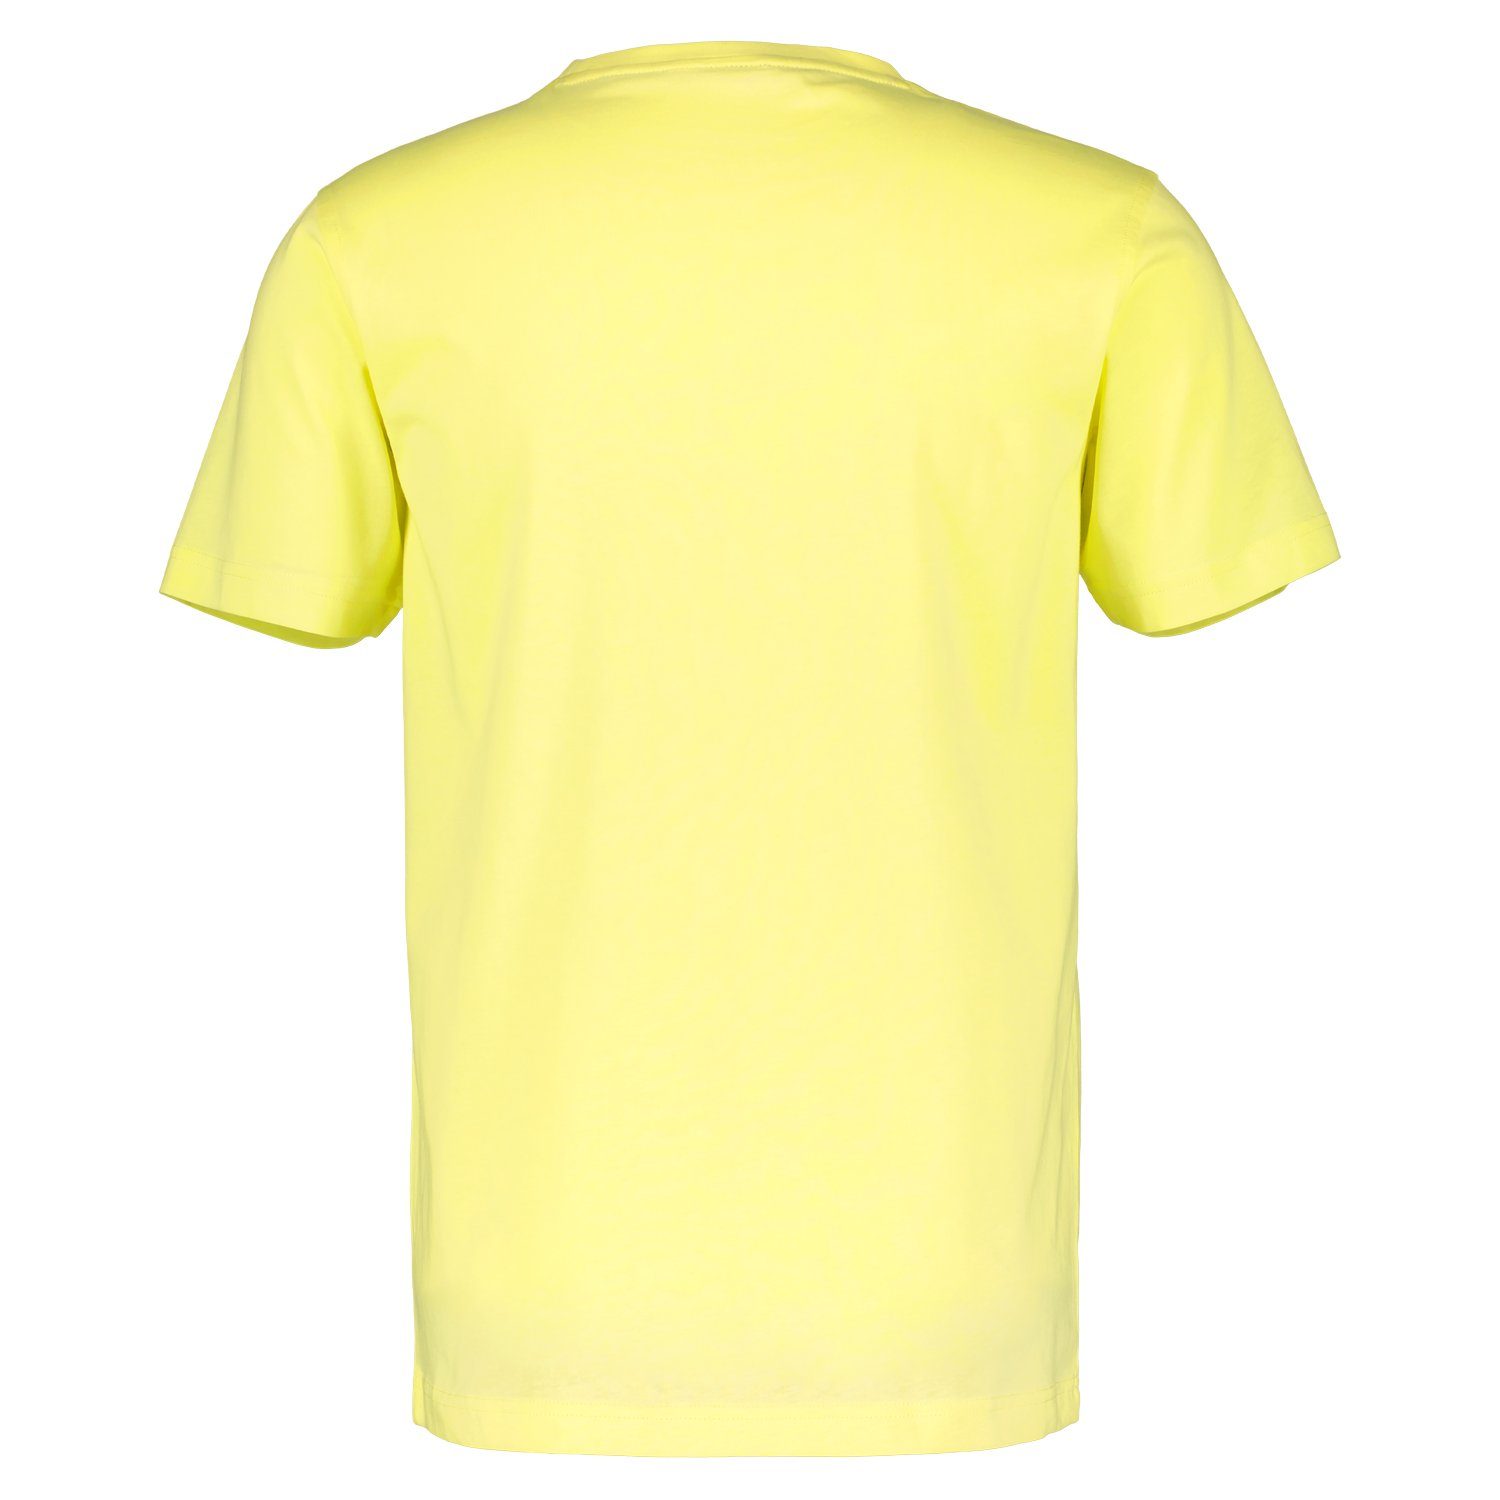 LERROS Brust Logoprägung T-Shirt an lemon der pure